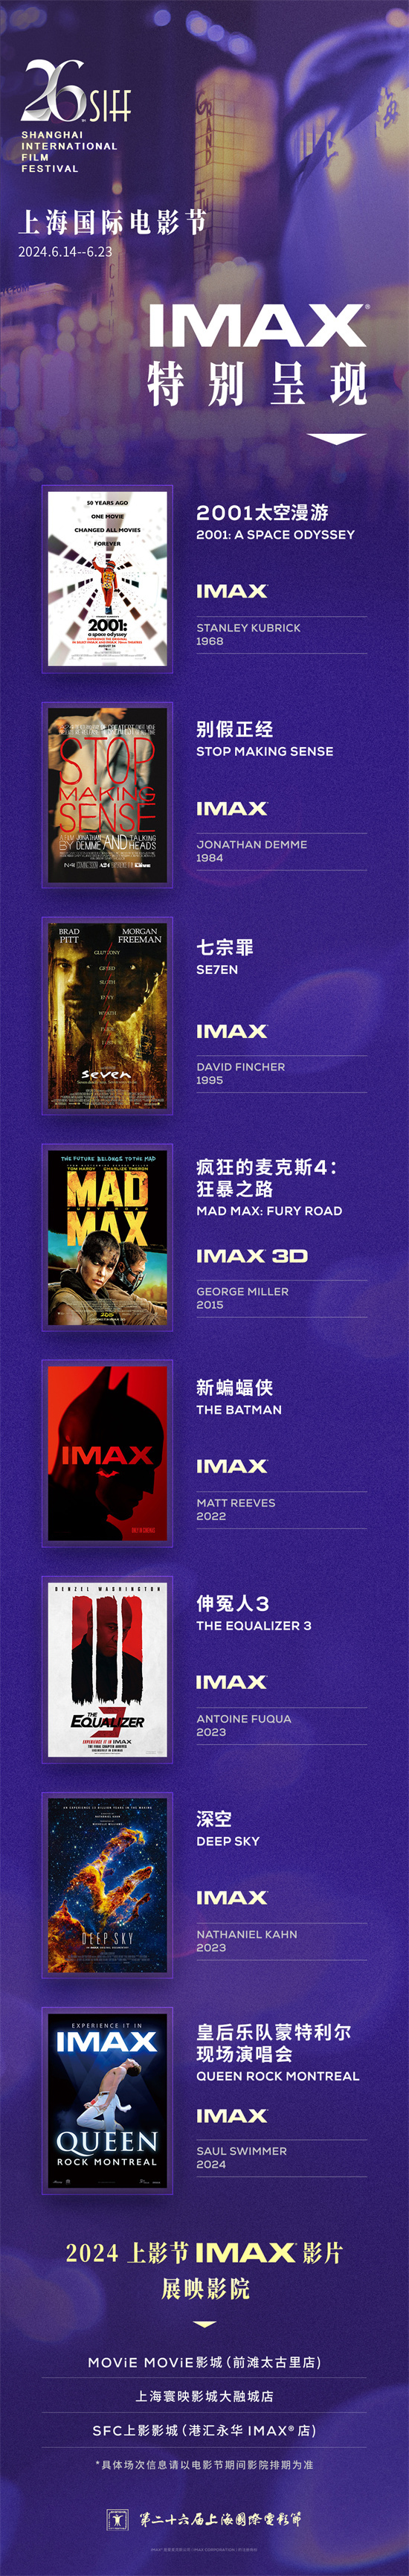 上影节第26届来袭，IMAX大片单曝光，8部精彩影片等你来看！插图